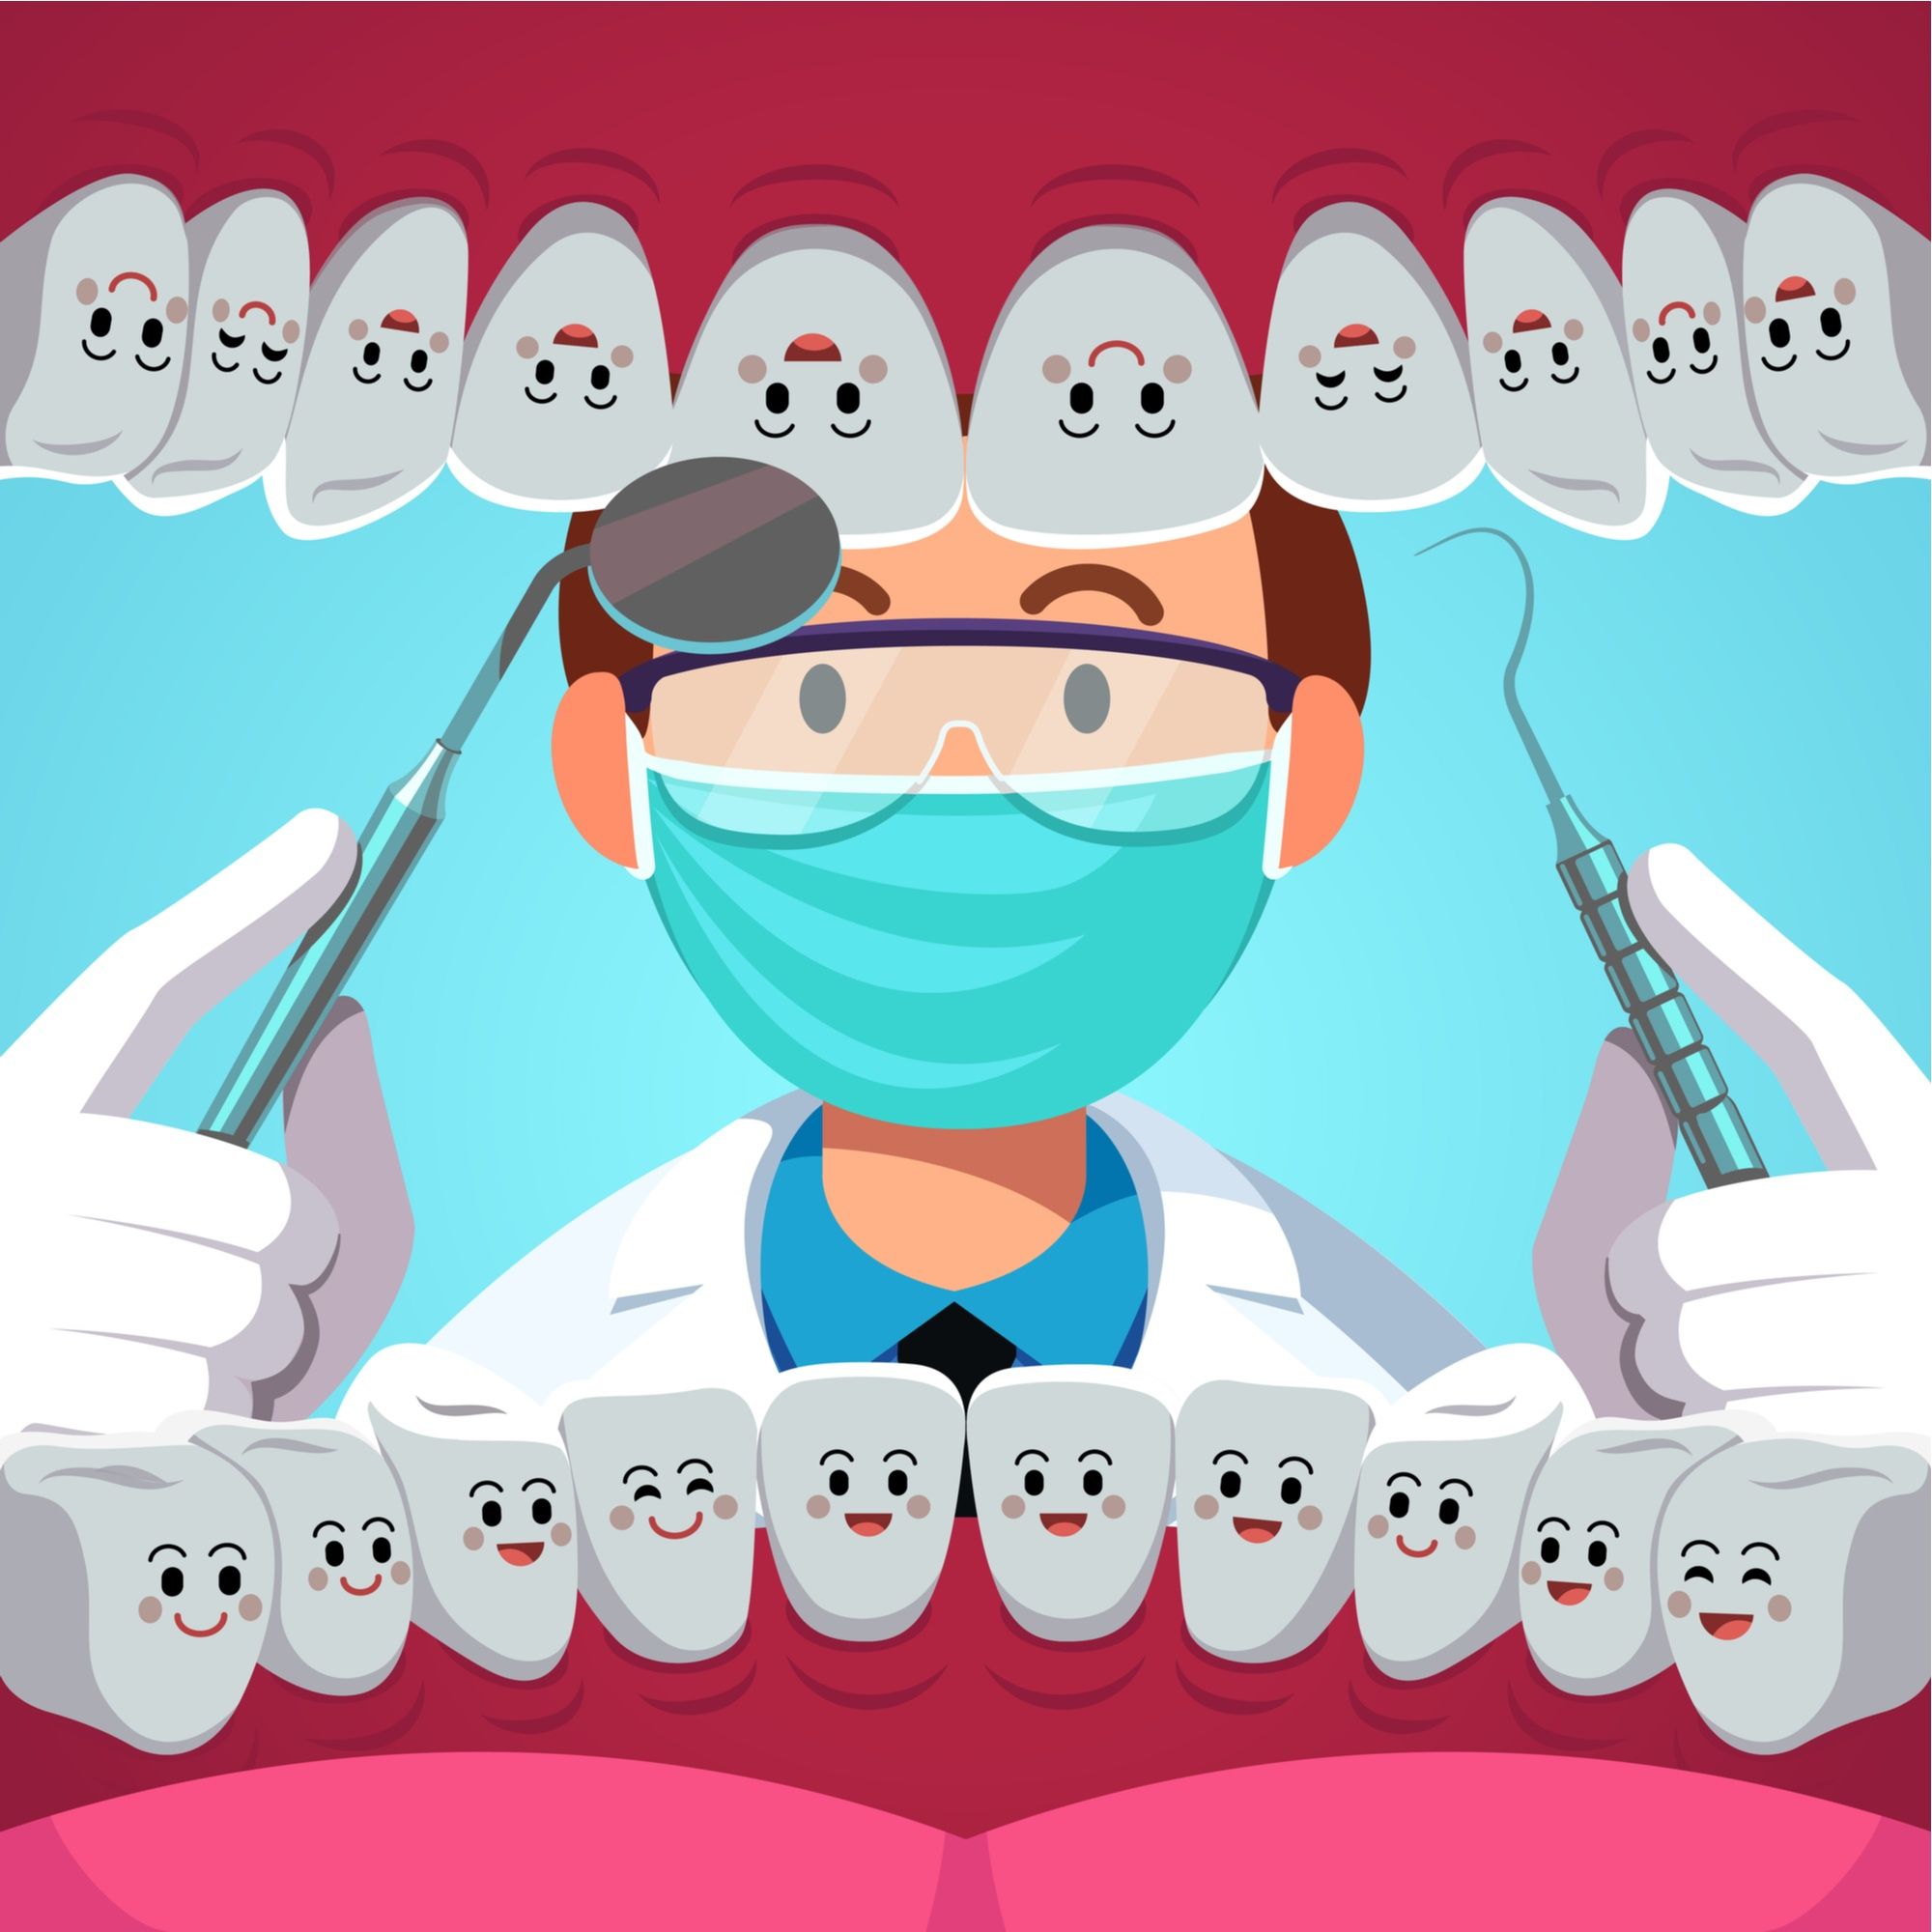 عوامل تساهم في تحديد تكلفة زراعة الأسنان الفورية